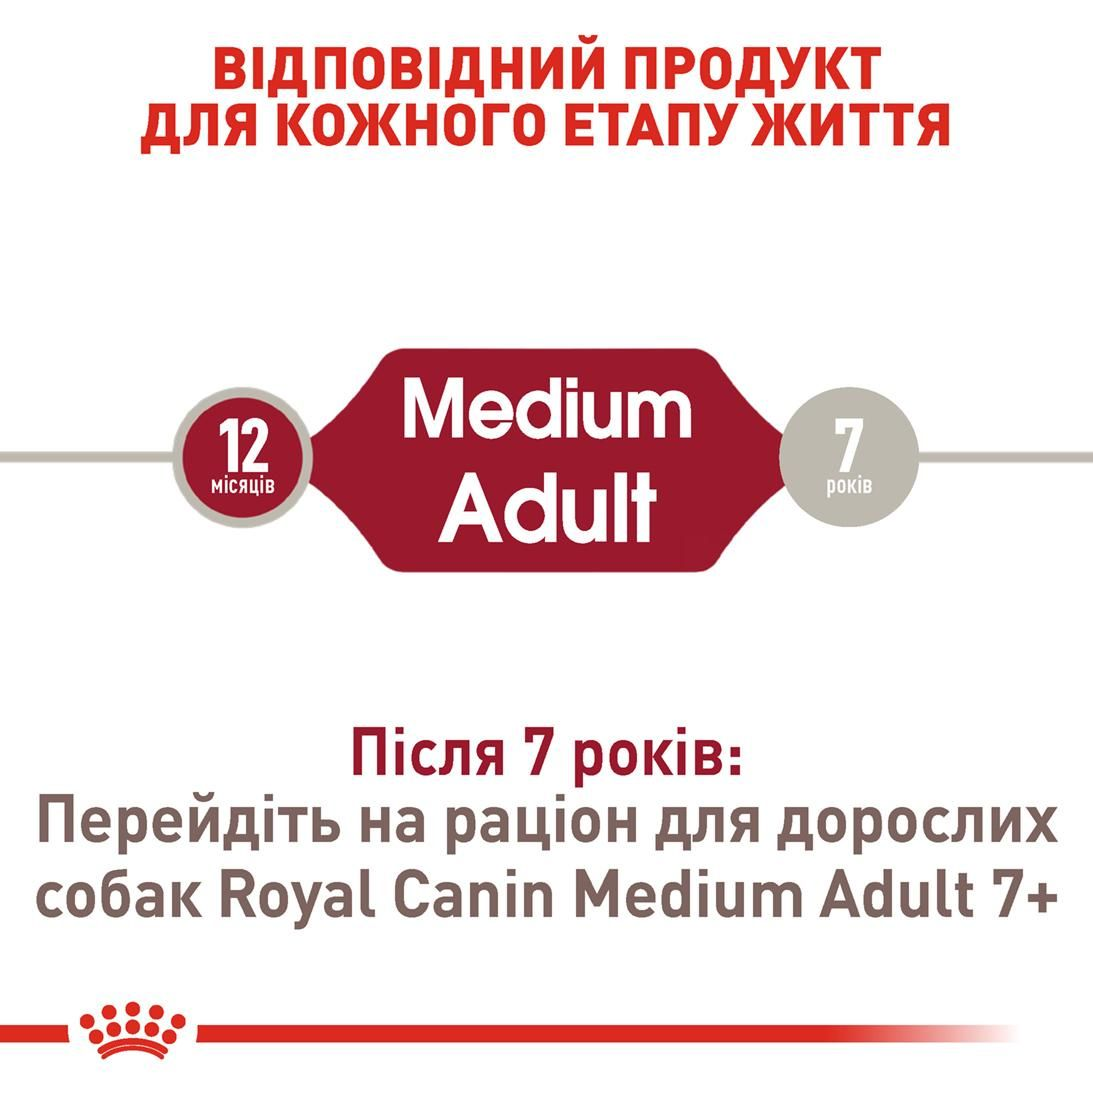 Medium Adult